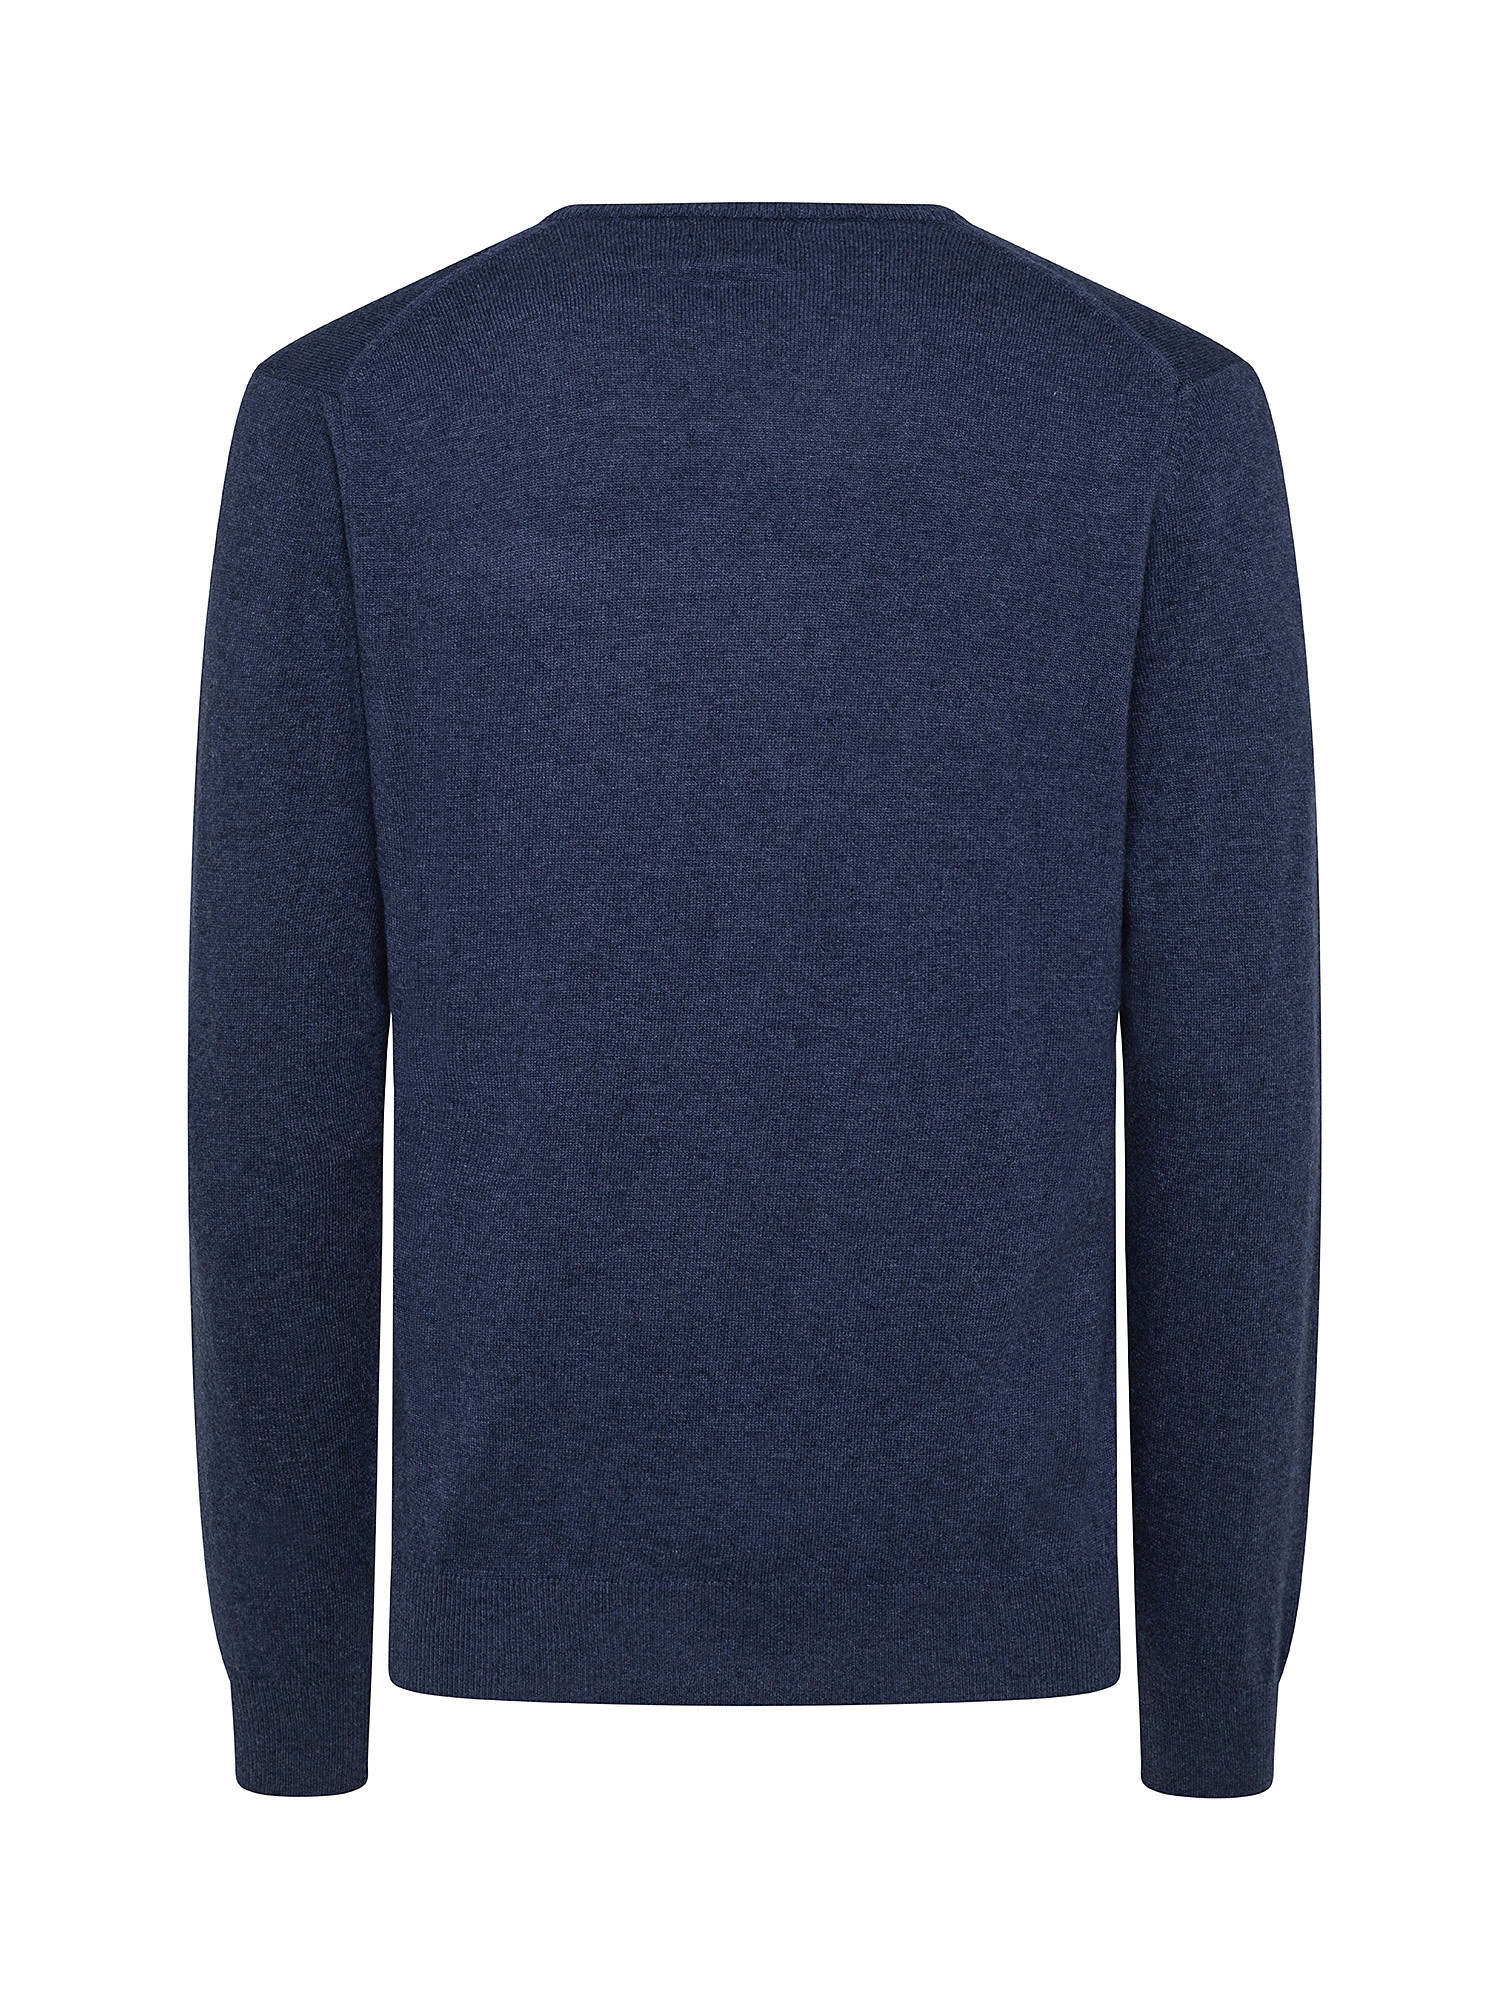 Cashmere Blend V-neck sweater with noble fibers, Denim, large image number 1